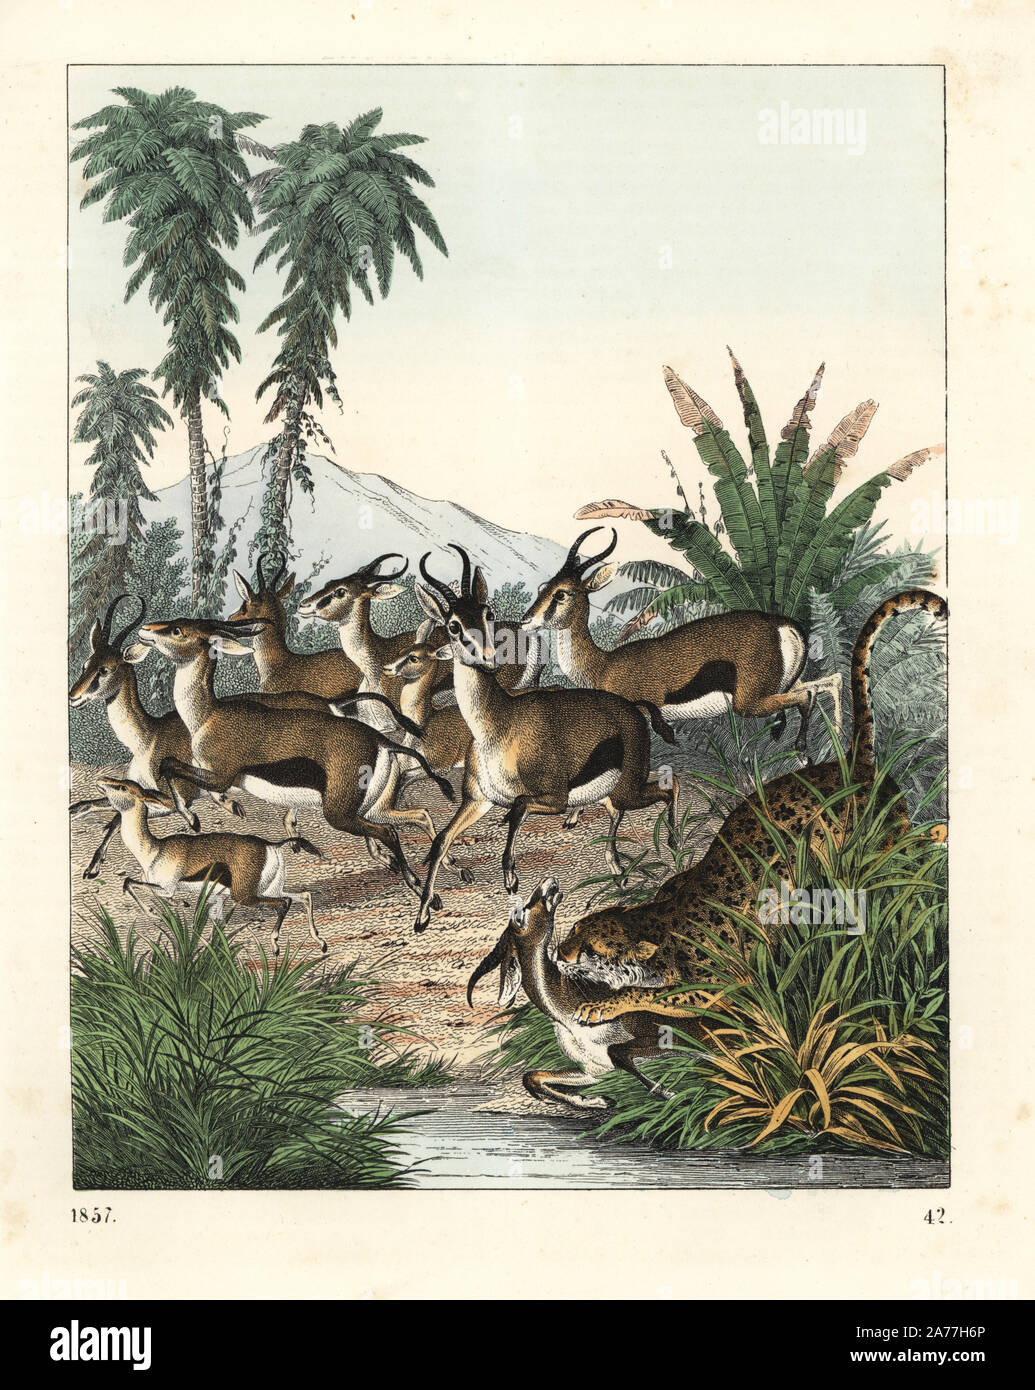 Dorcas gazelle, Gazella dorcas (vulnerable), running from a cheetah, Acinonyx jubatus (vulnerable). Handcoloured lithograph from Carl Hoffmann's Book of the World, Stuttgart, 1857. Stock Photo